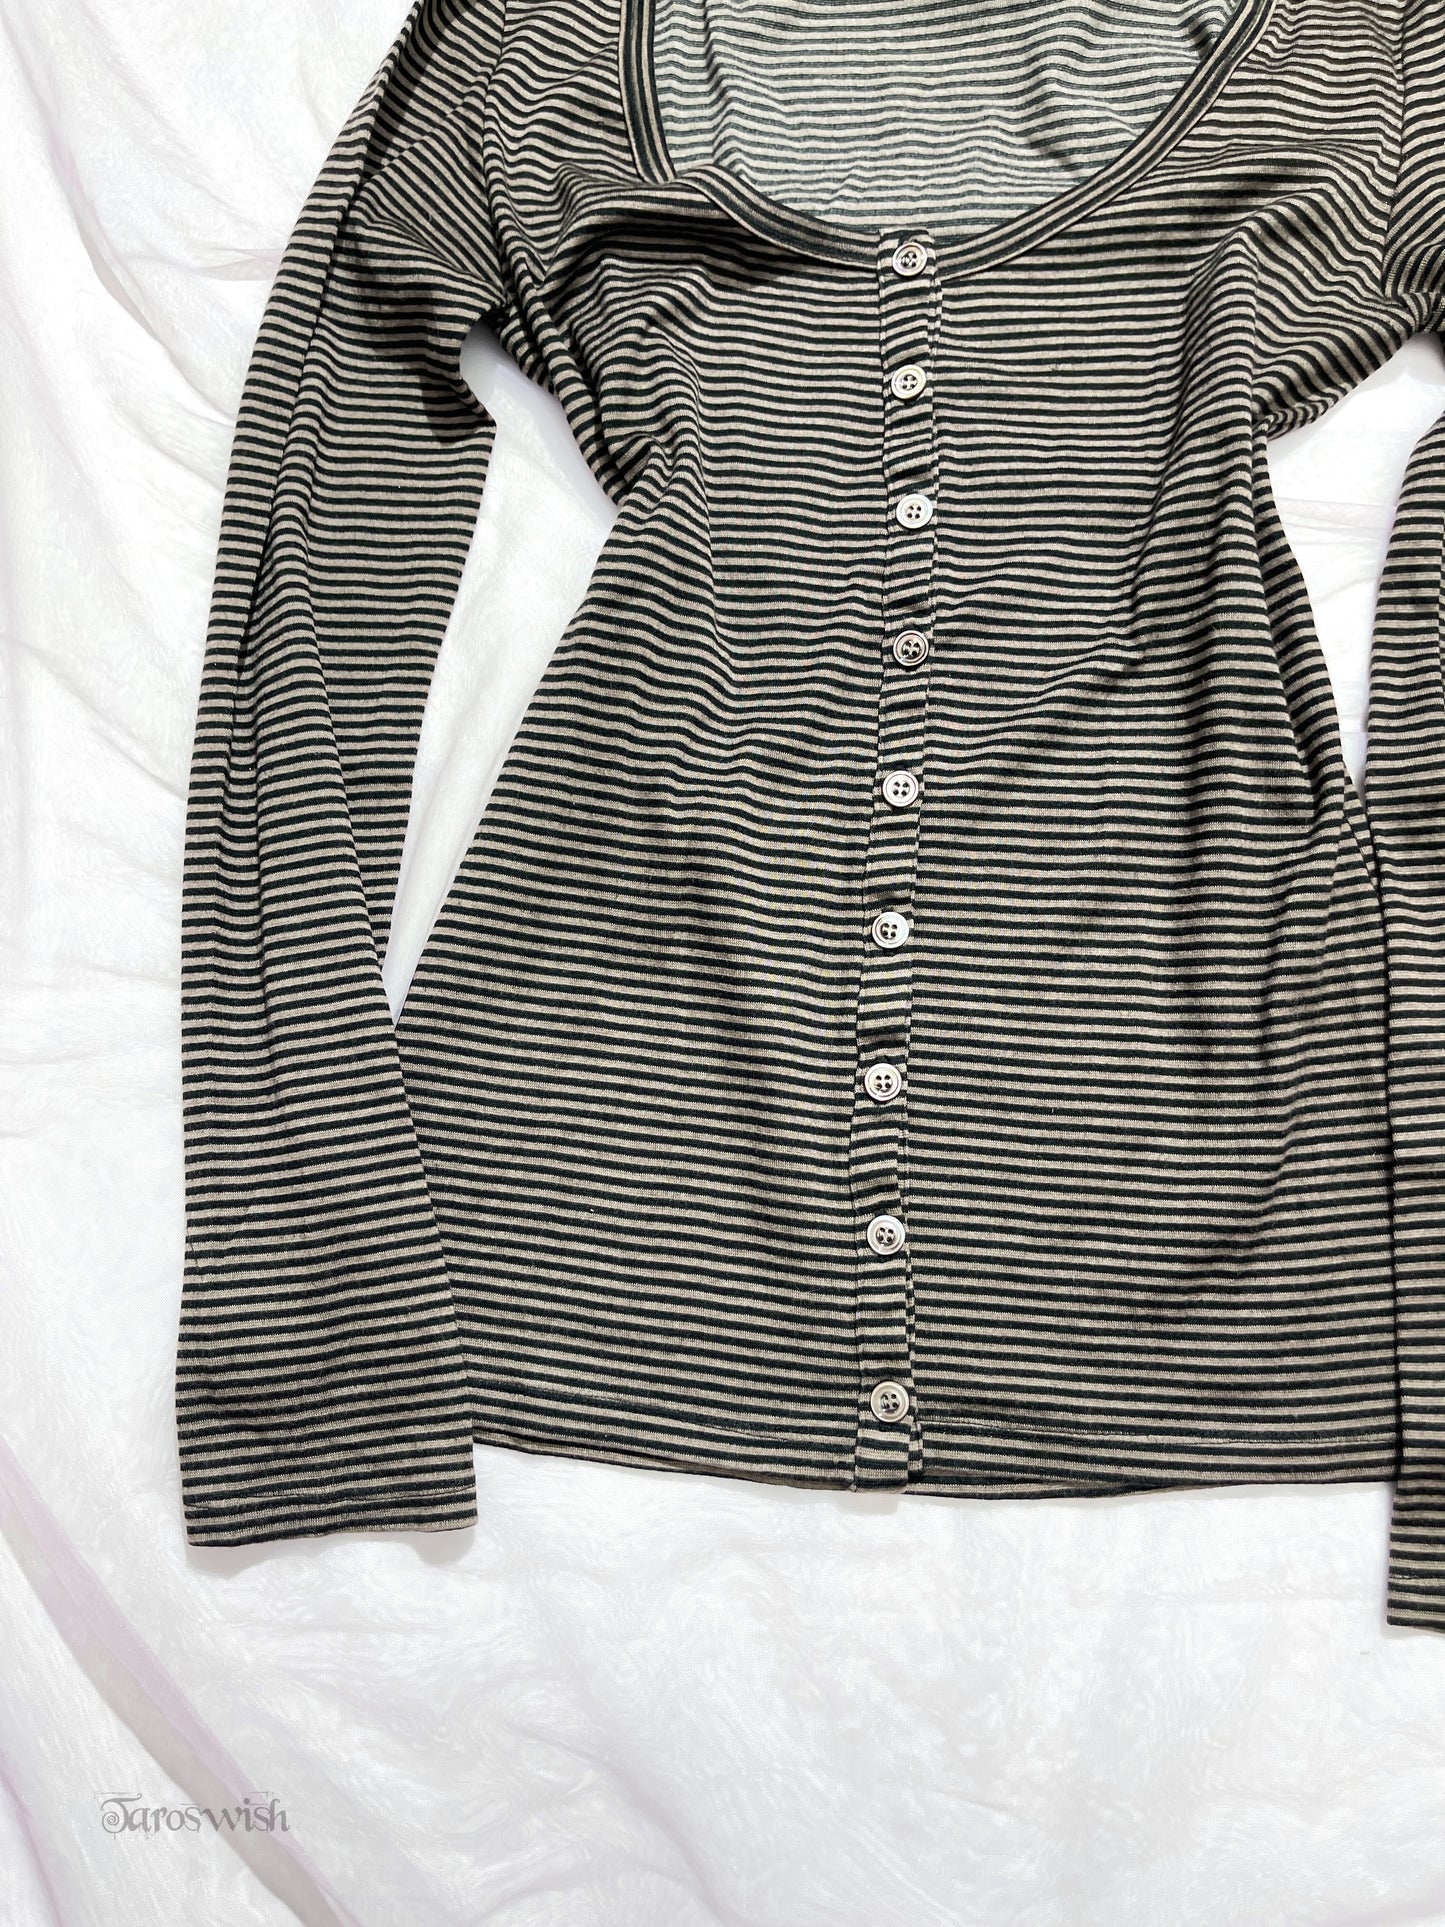 ナイン Button up striped  long sleeves top